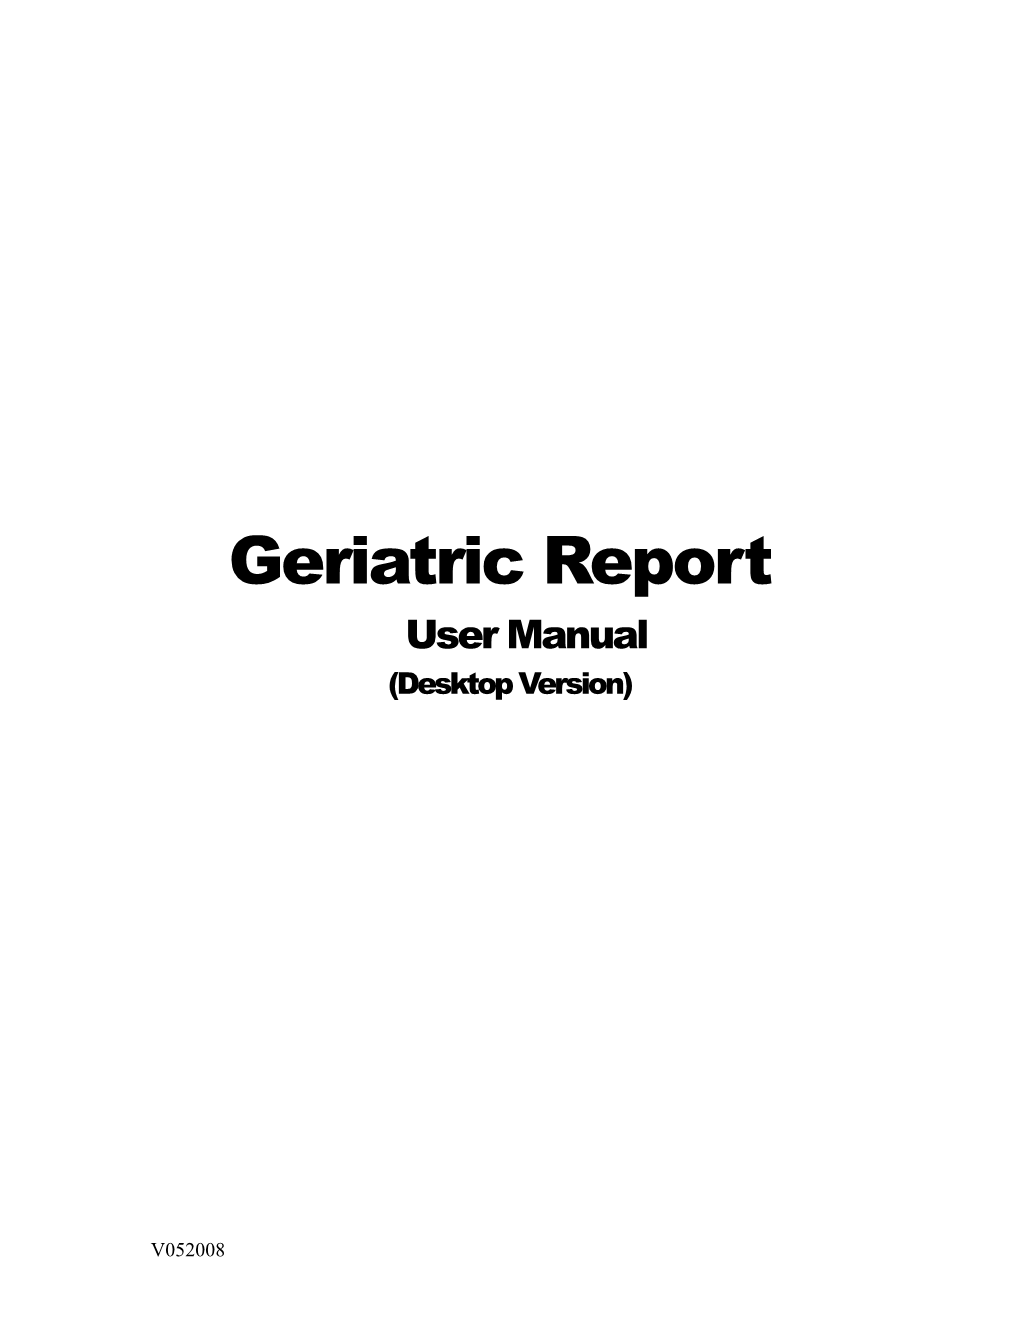 Geriatric Report User Manual